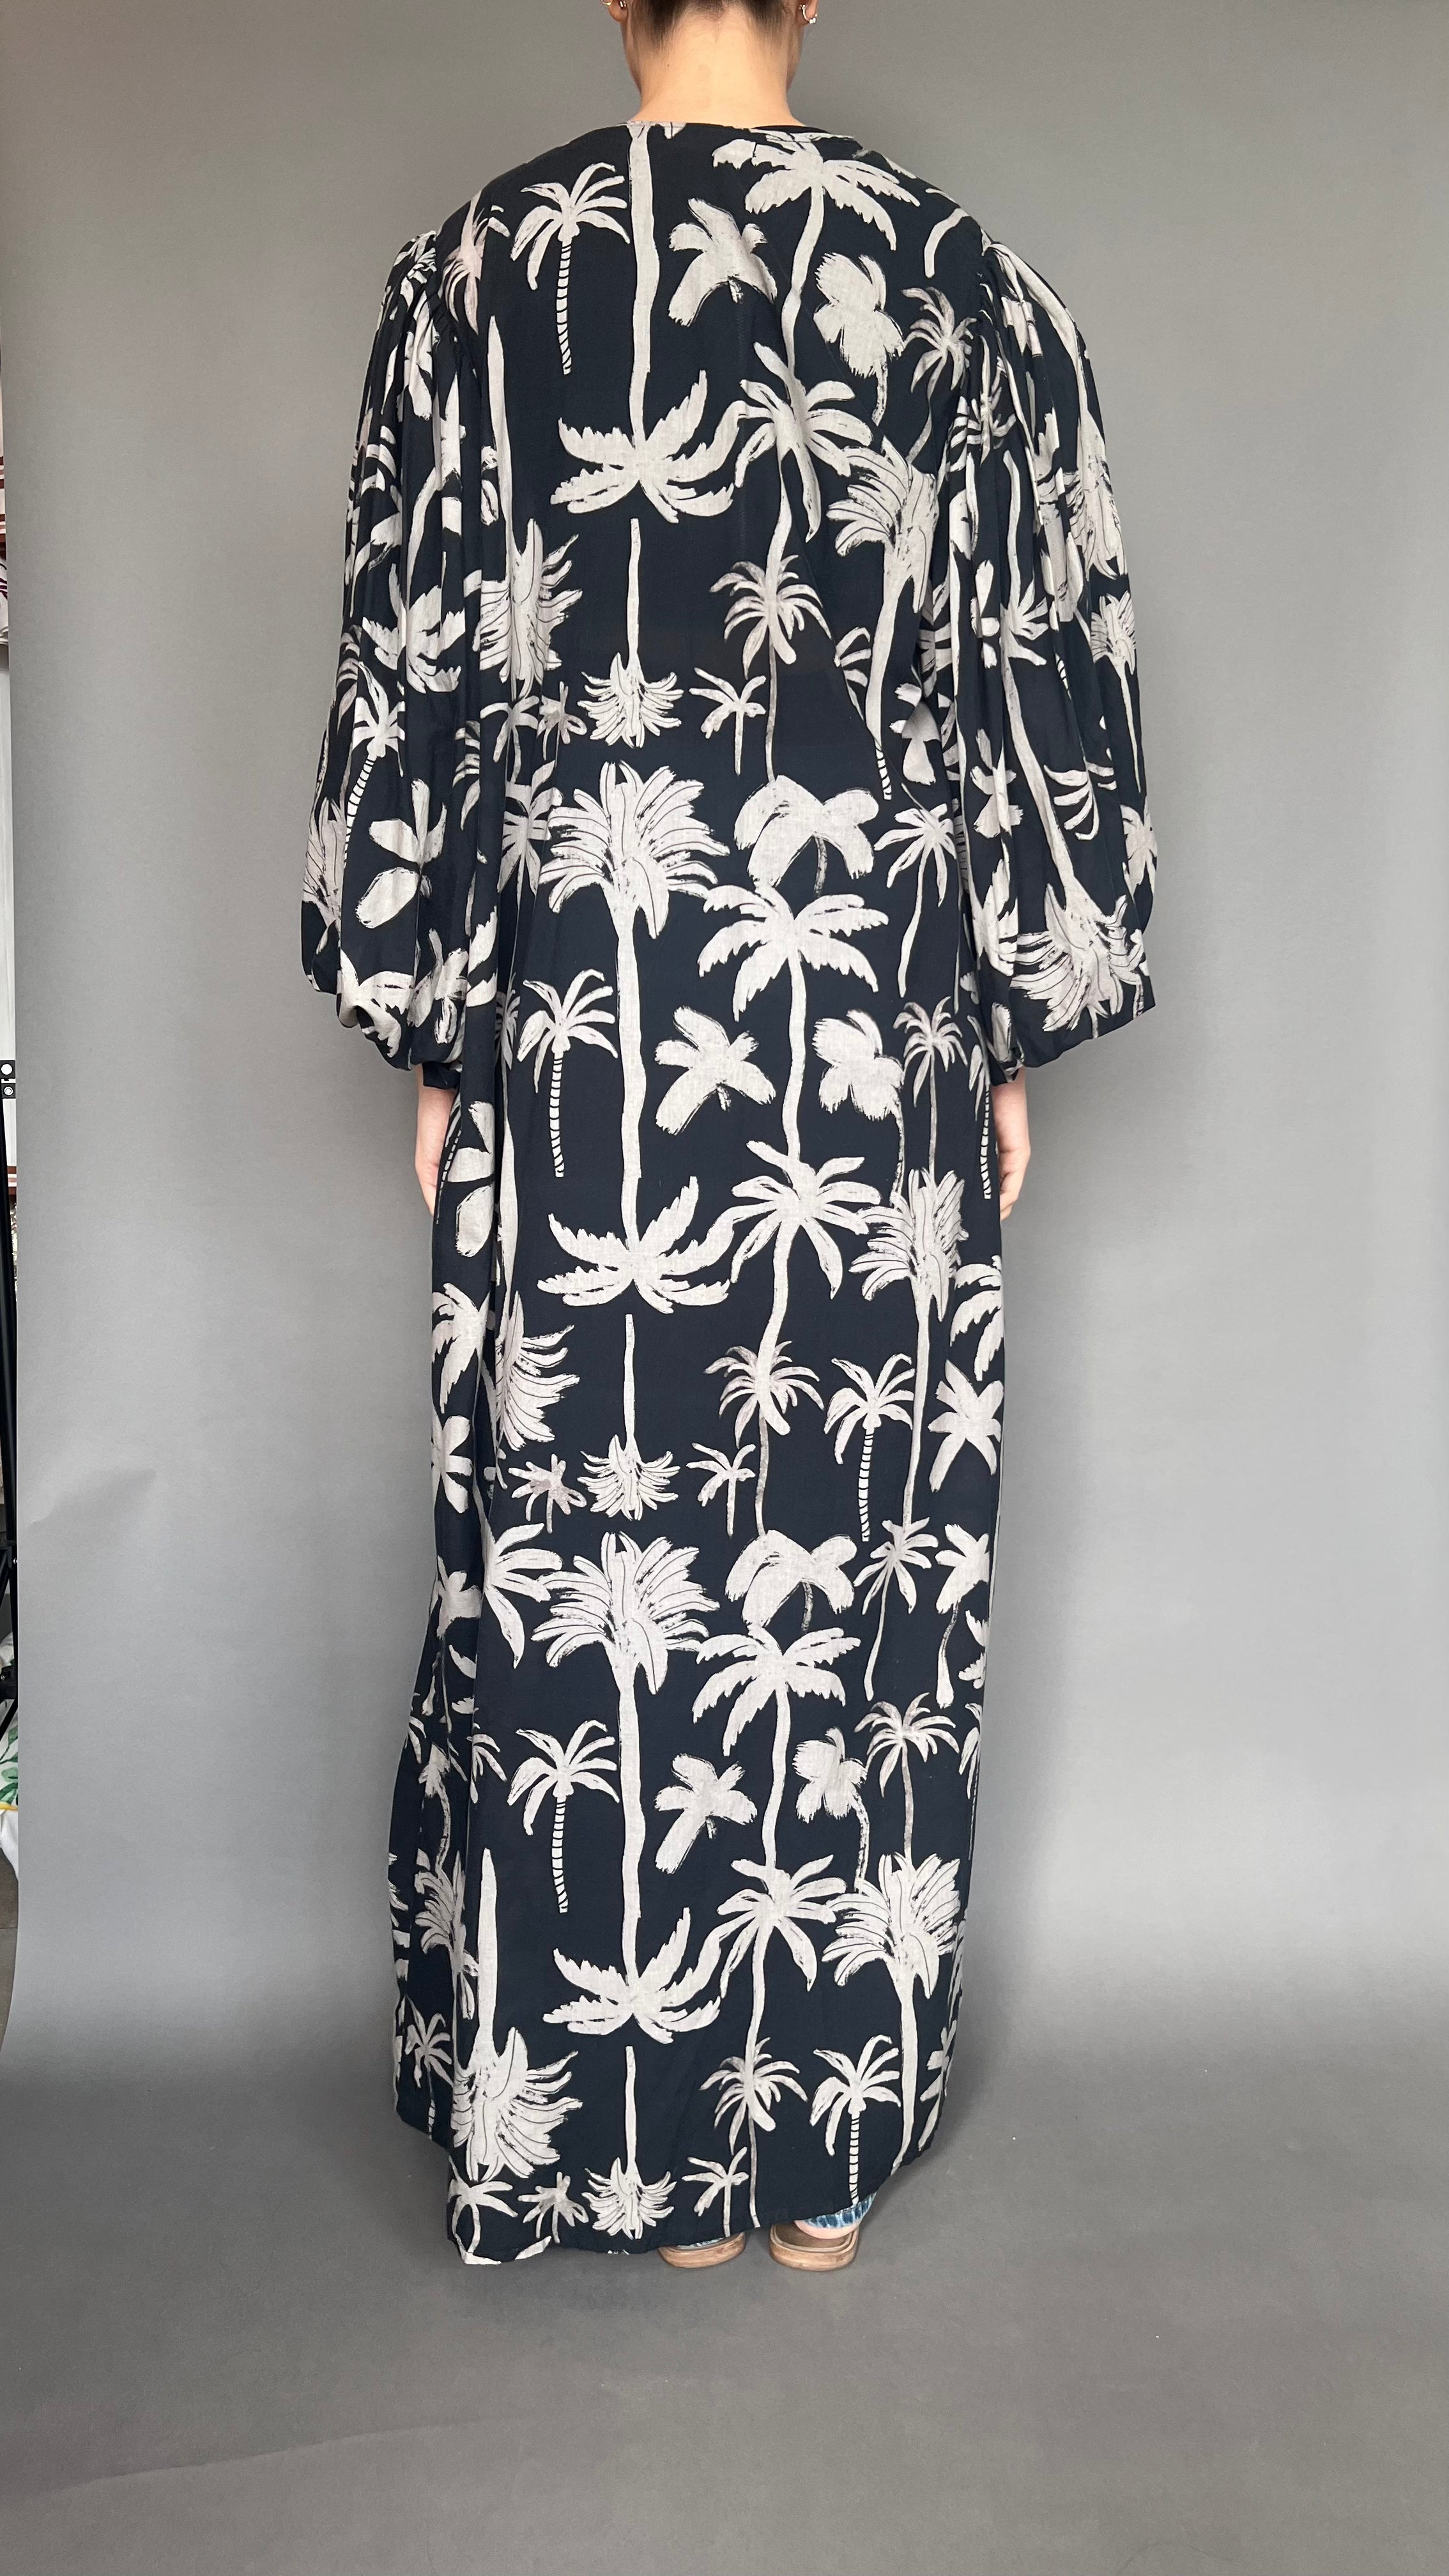 Kimono Bahama mama